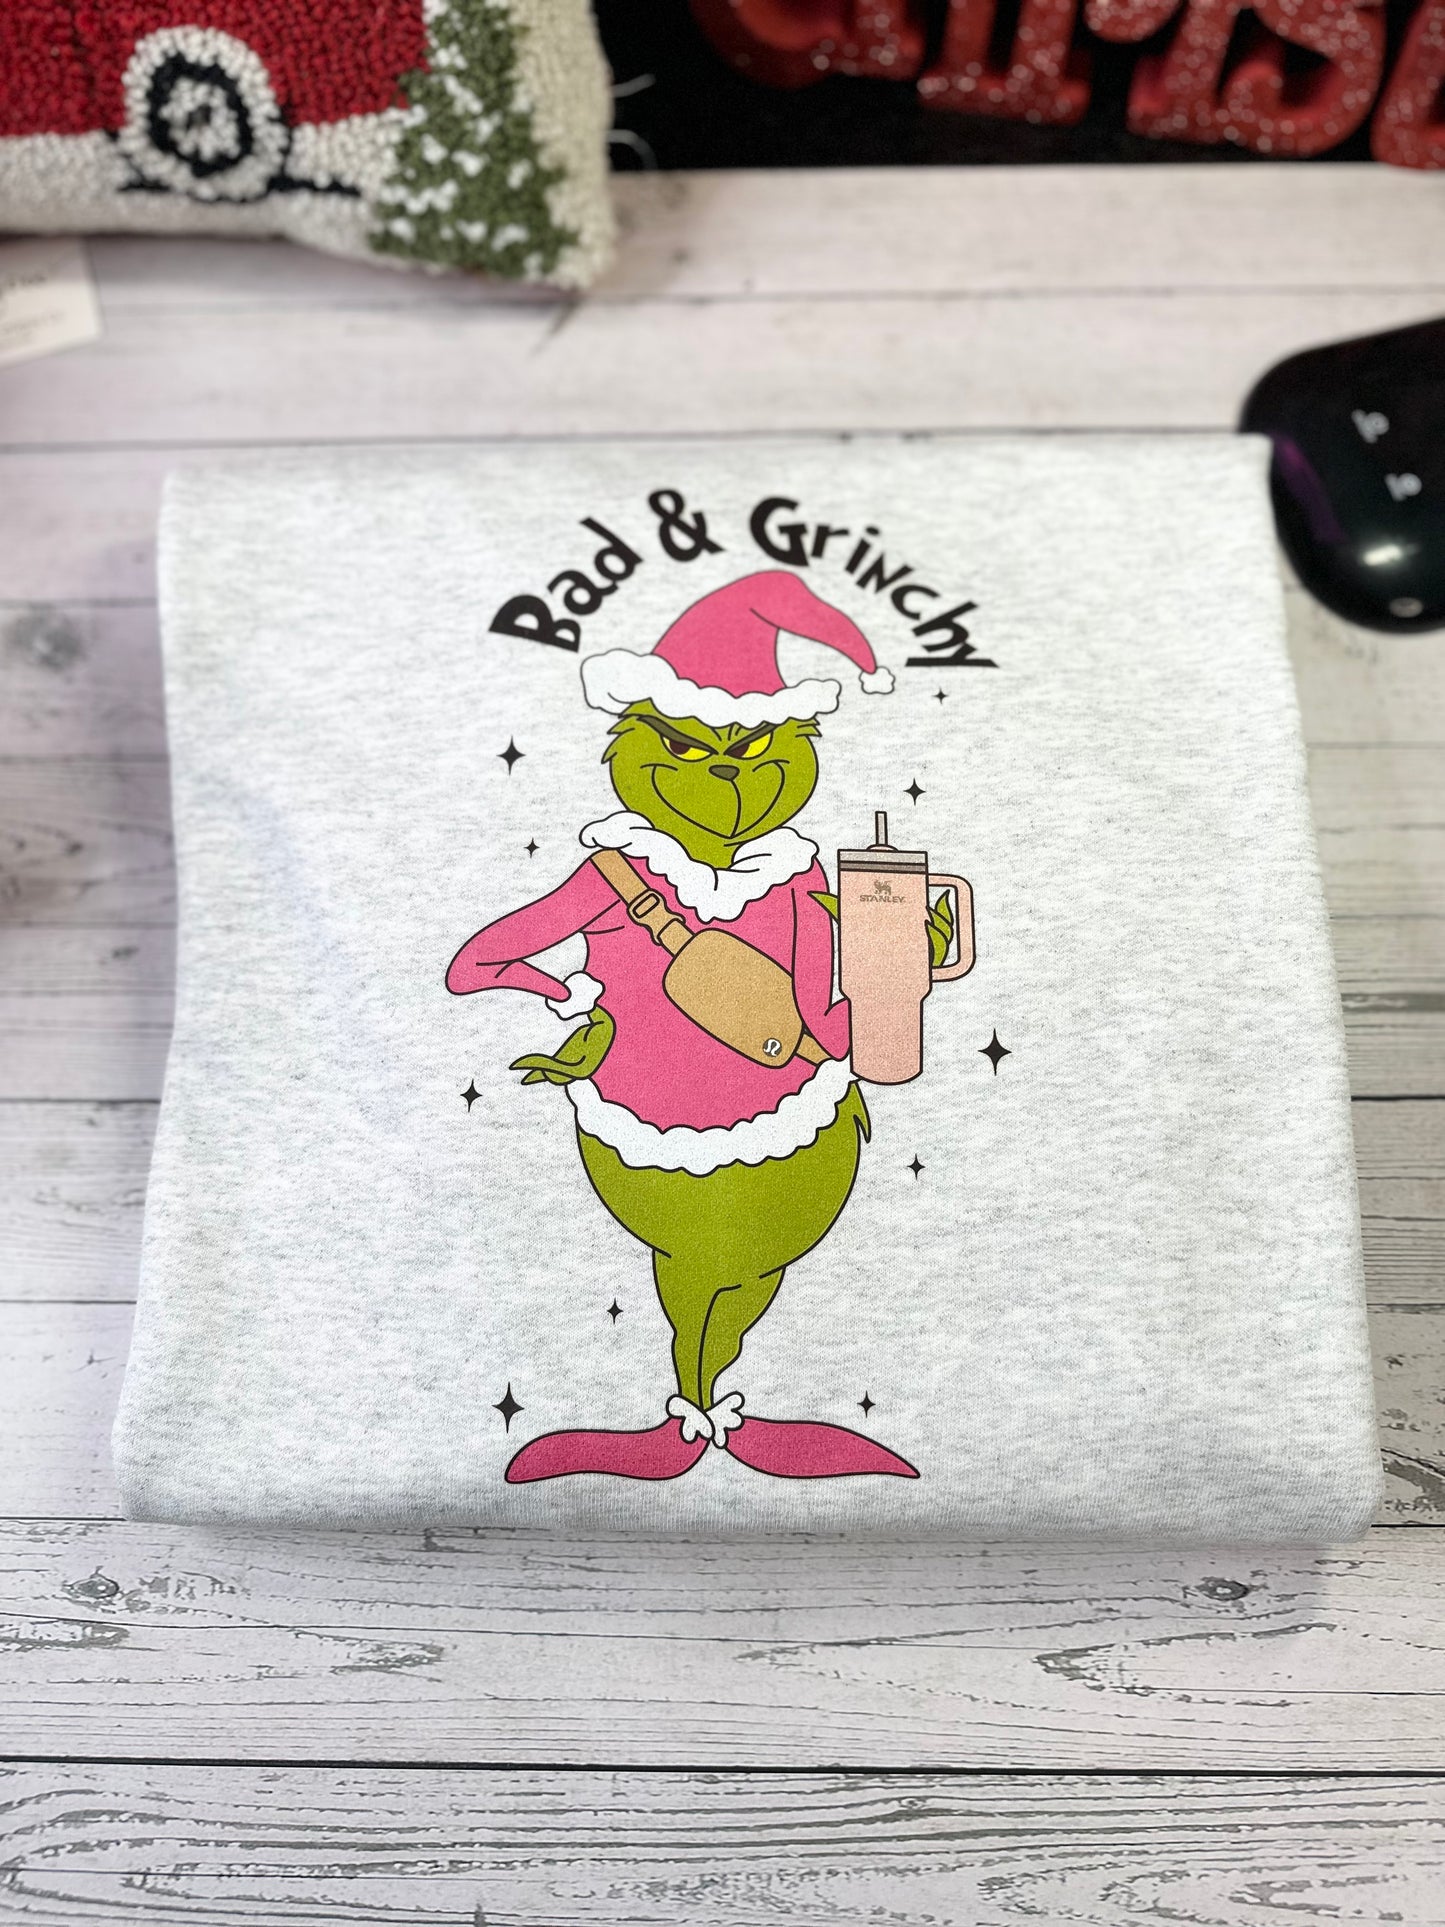 Glittery Bad & Grinchy Sweatshirt